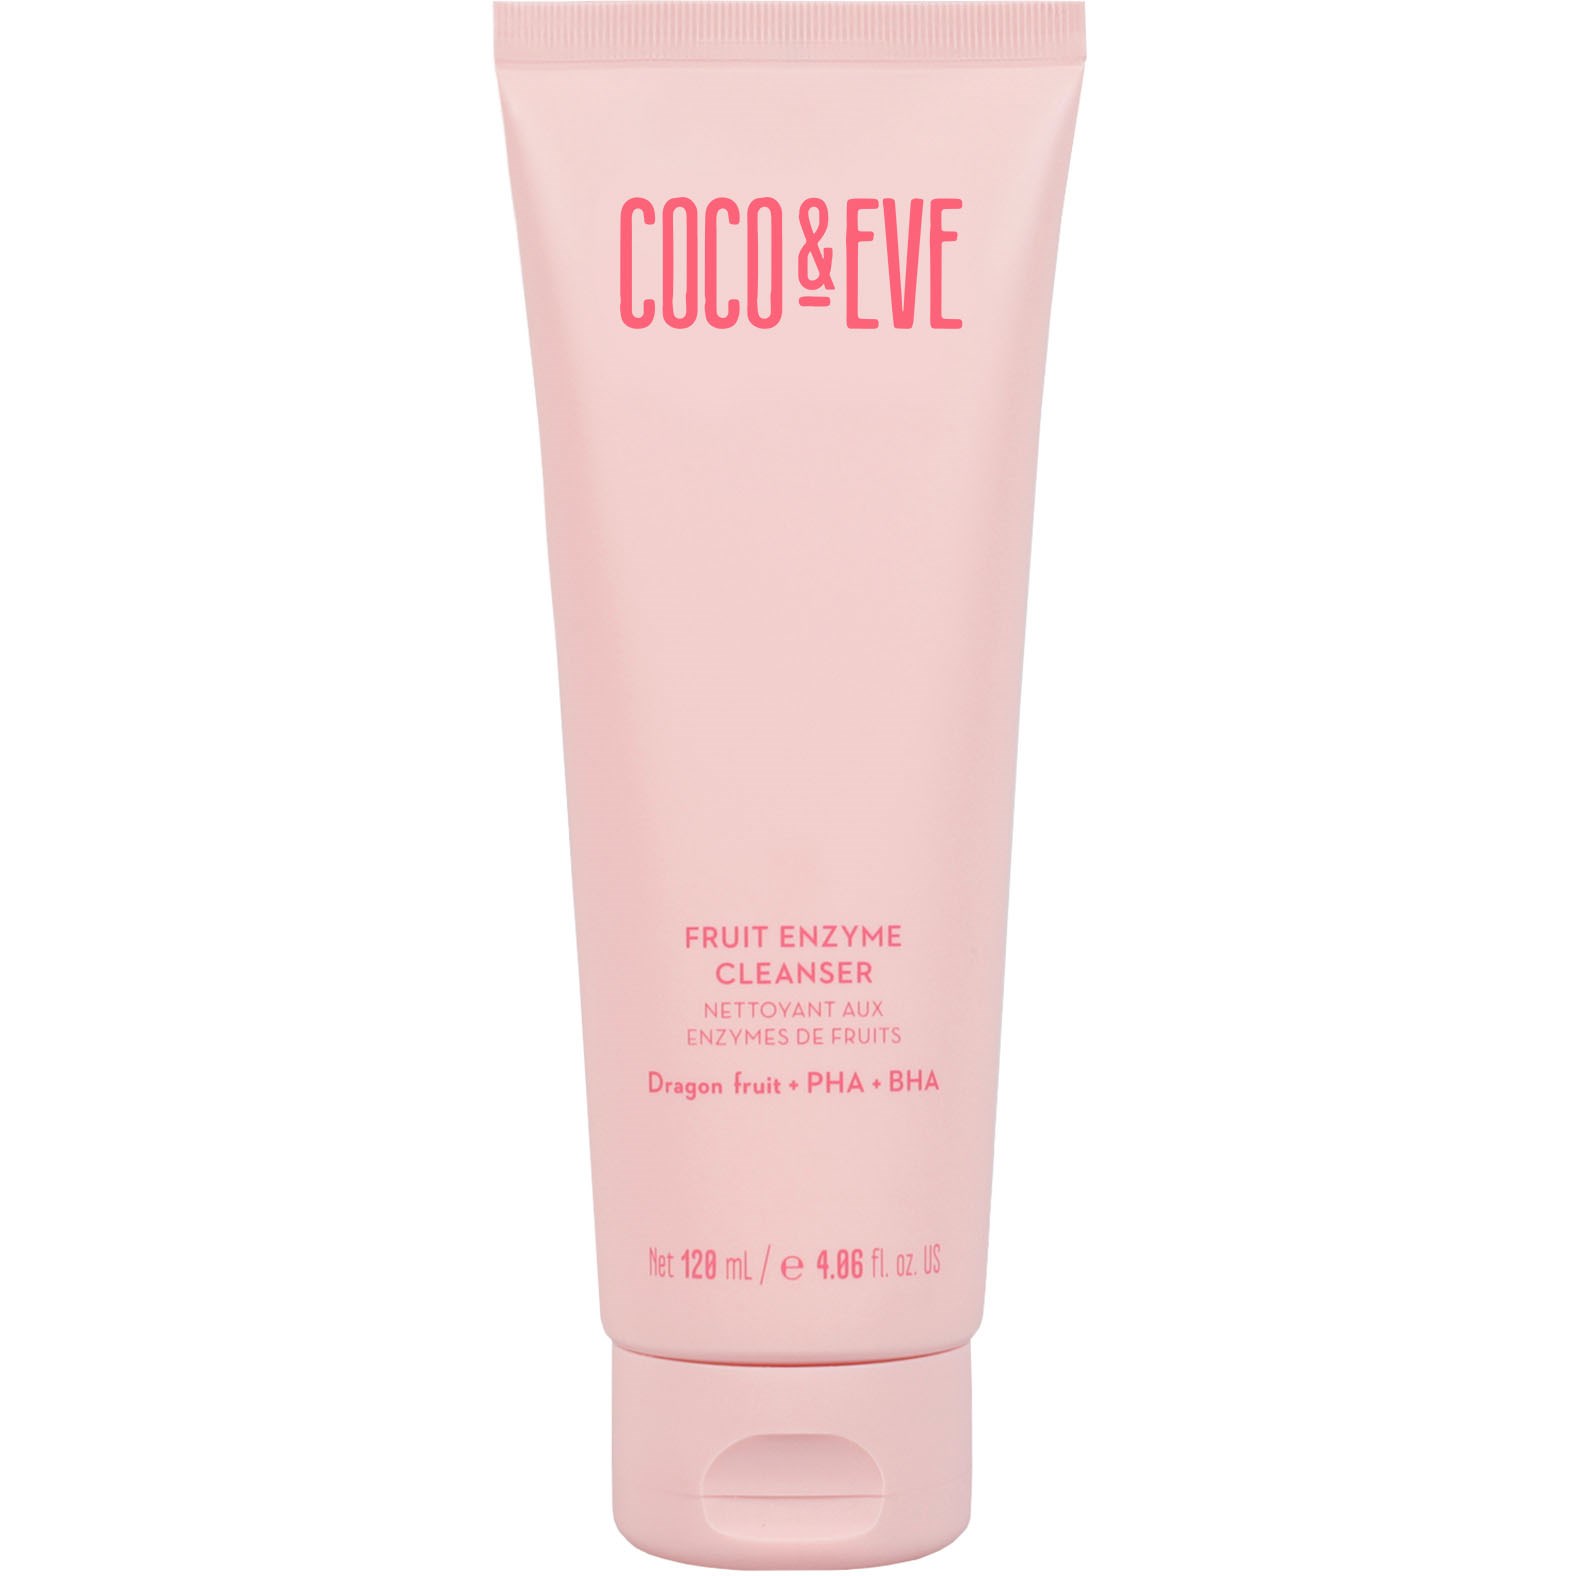 Фото - Засіб для очищення обличчя і тіла Coco & Eve Fruit Enzyme Cleanser 120 ml